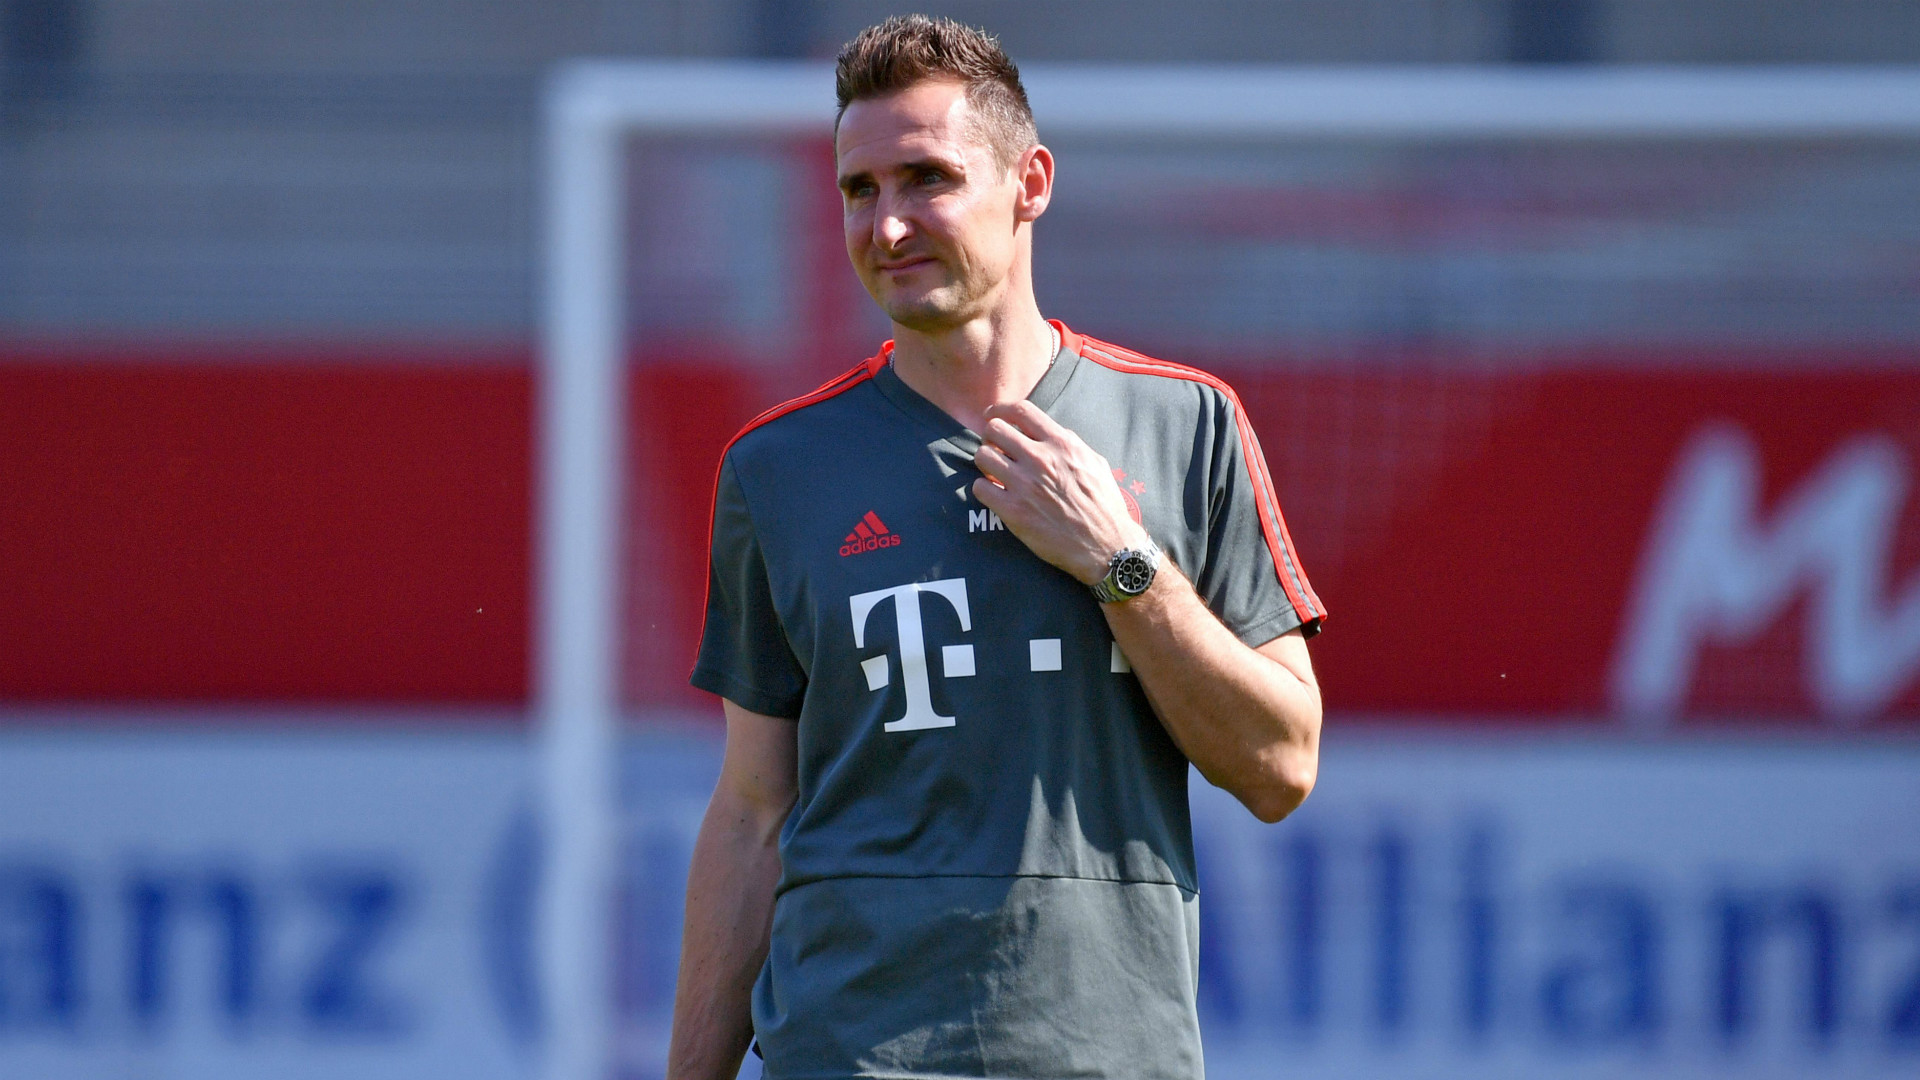 Miroslav Klose Bayern Munich jersey